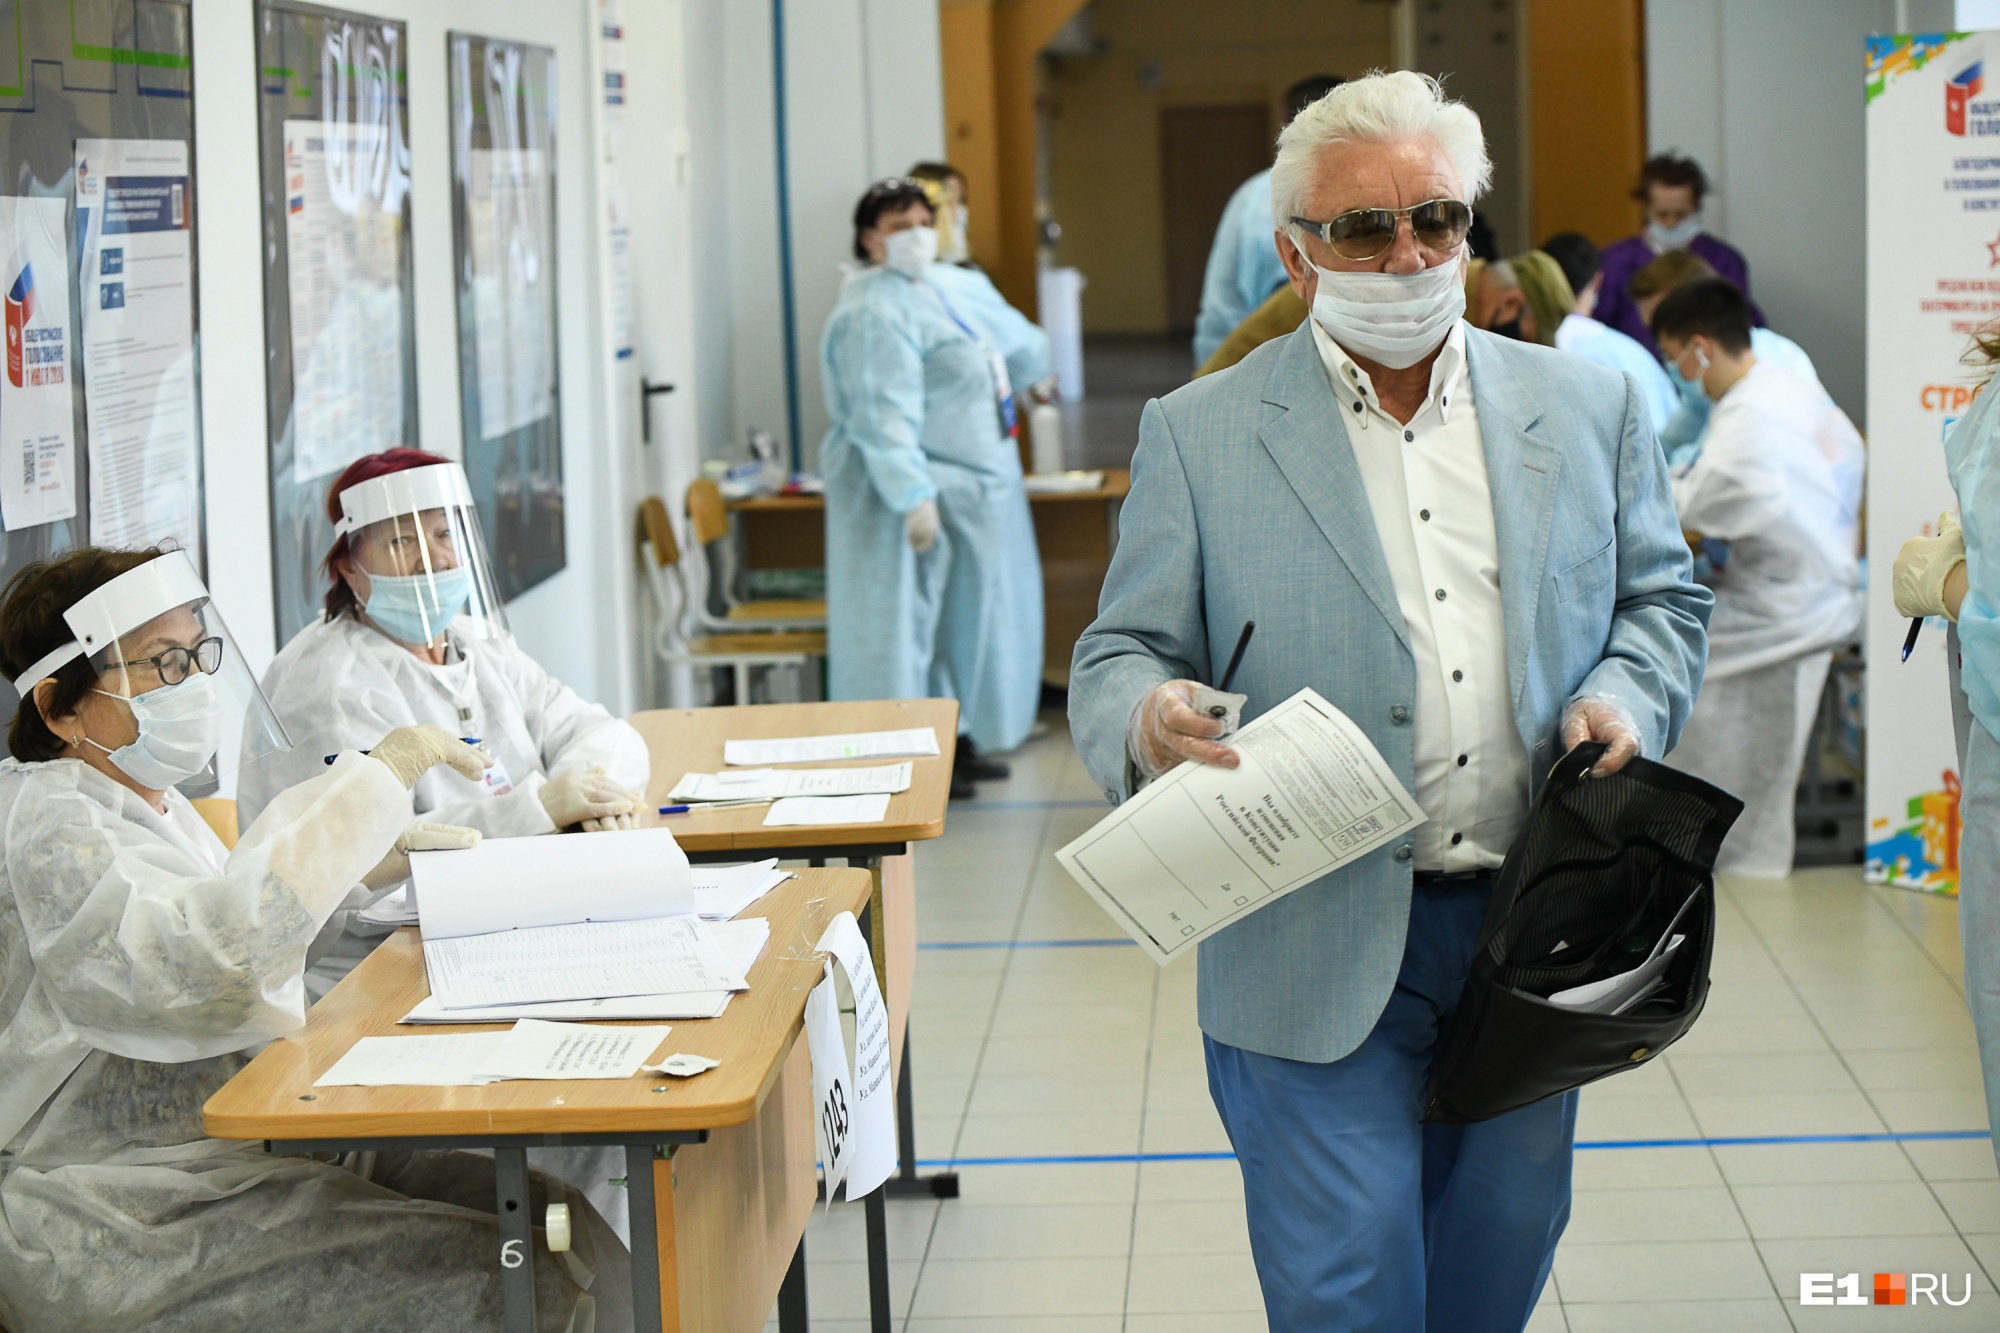 Стерильное голосование: фоторепортаж с избирательных участков в Екатеринбурге